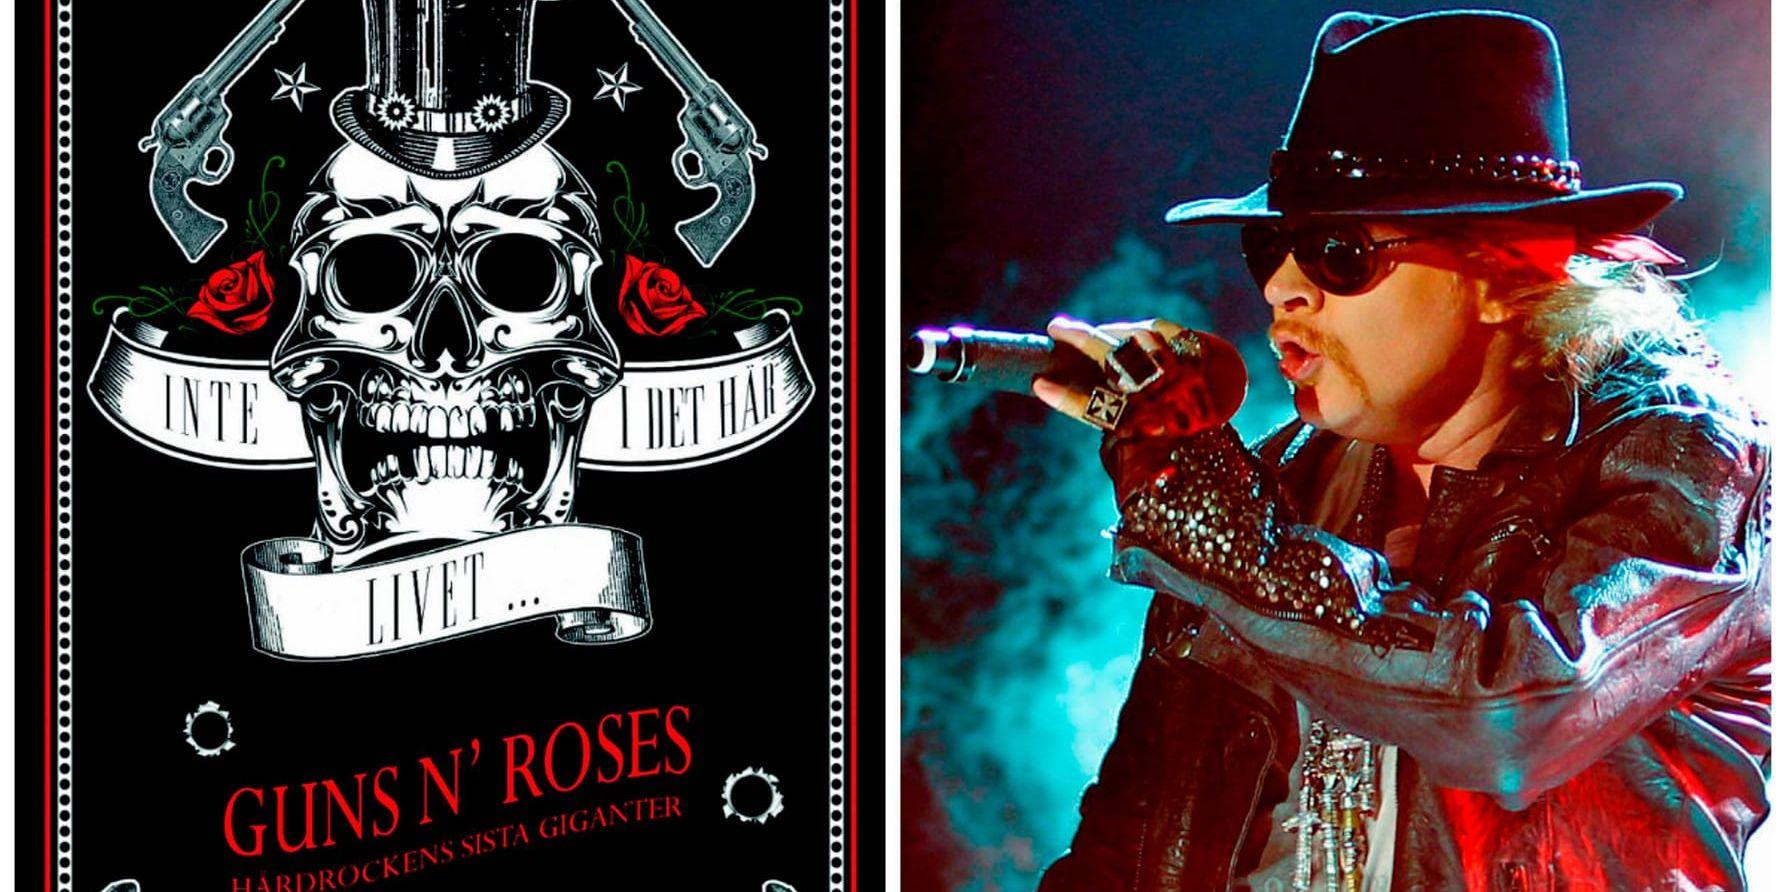    Konsert i Stockholm. Den 29 juni ställer sig Guns N’ Roses med sångaren Axl Rose (bilden) på scenen i Friends Arena. Musikjournalisten Mike Wall har skrivit boken Inte i det här livet -  om bandet Guns N' Roses.